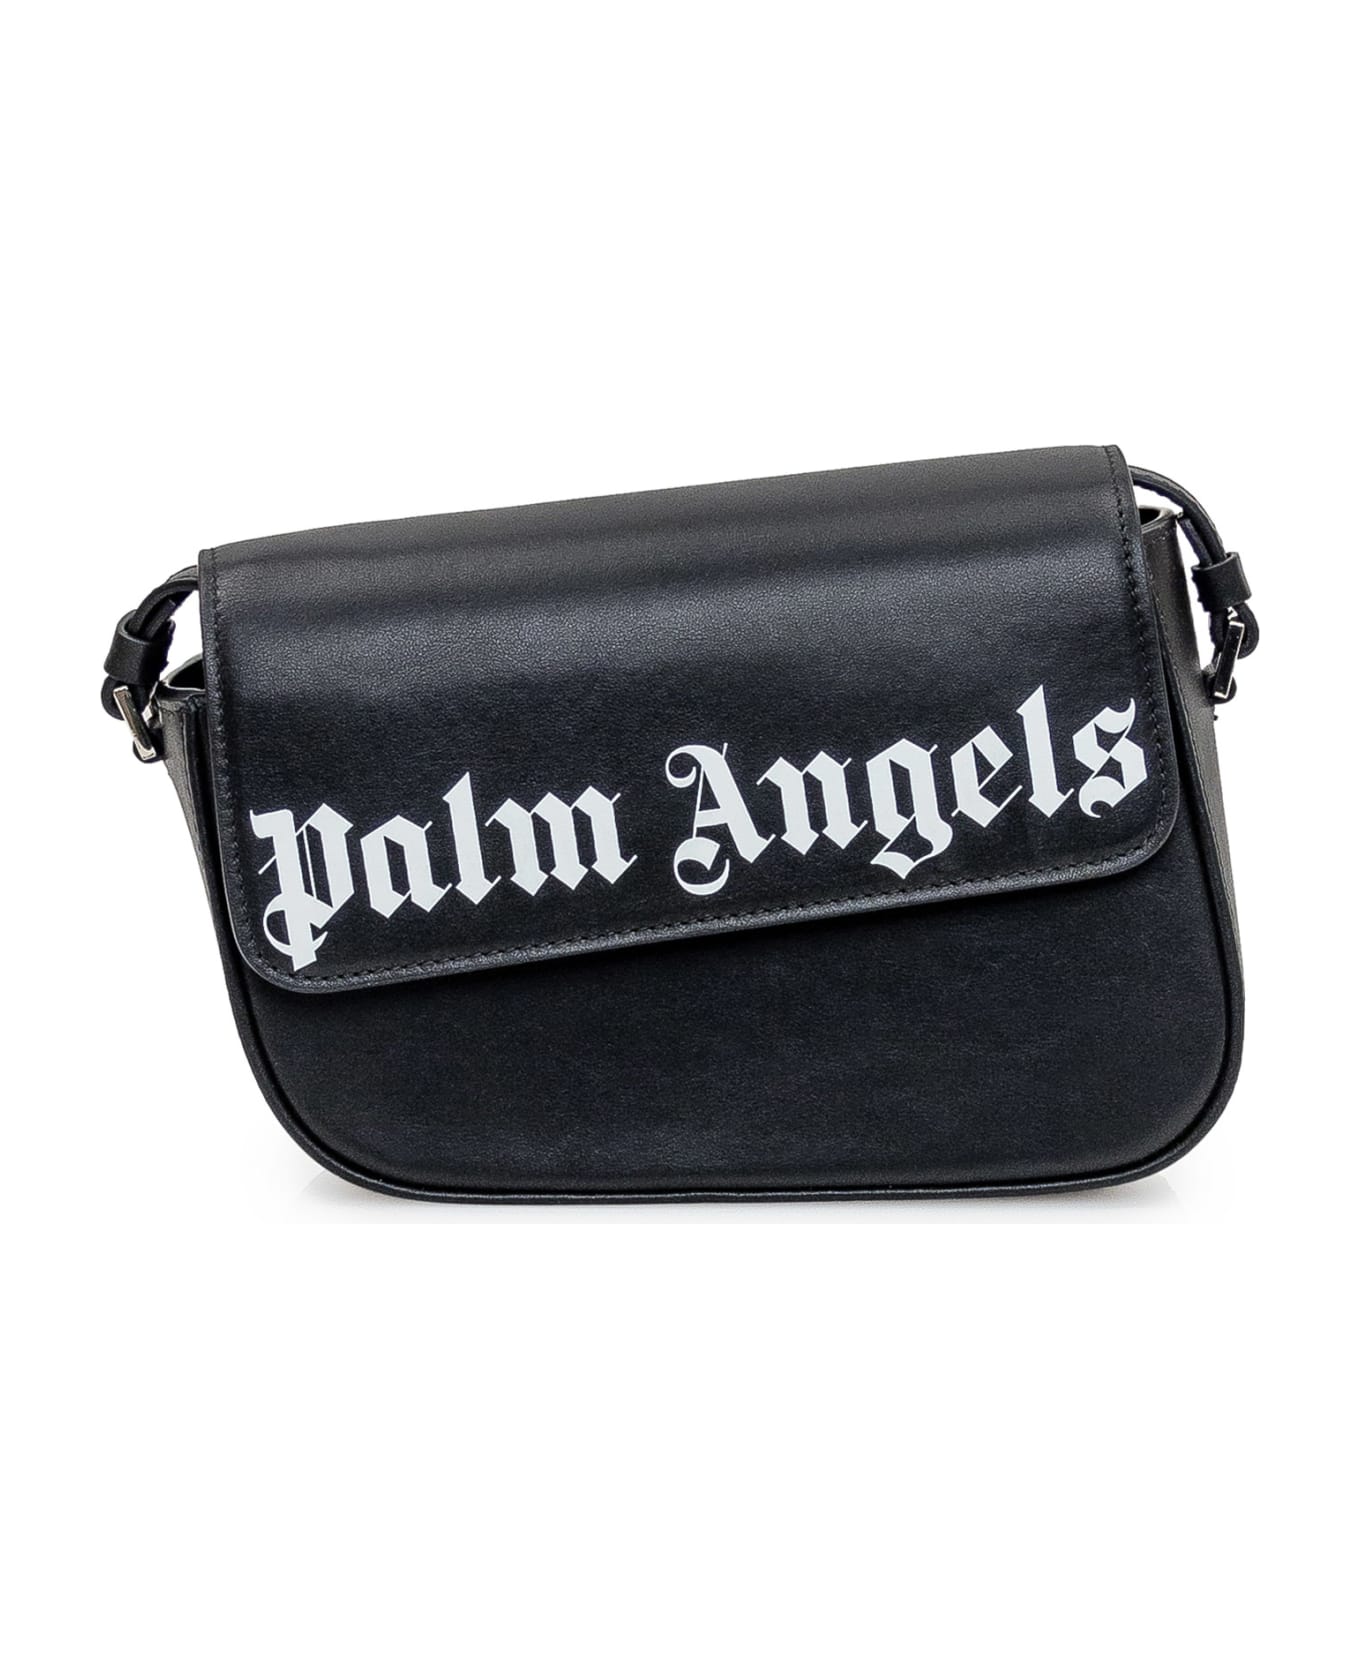 Palm Angels Crash Black Leather Bag - Black ショルダーバッグ